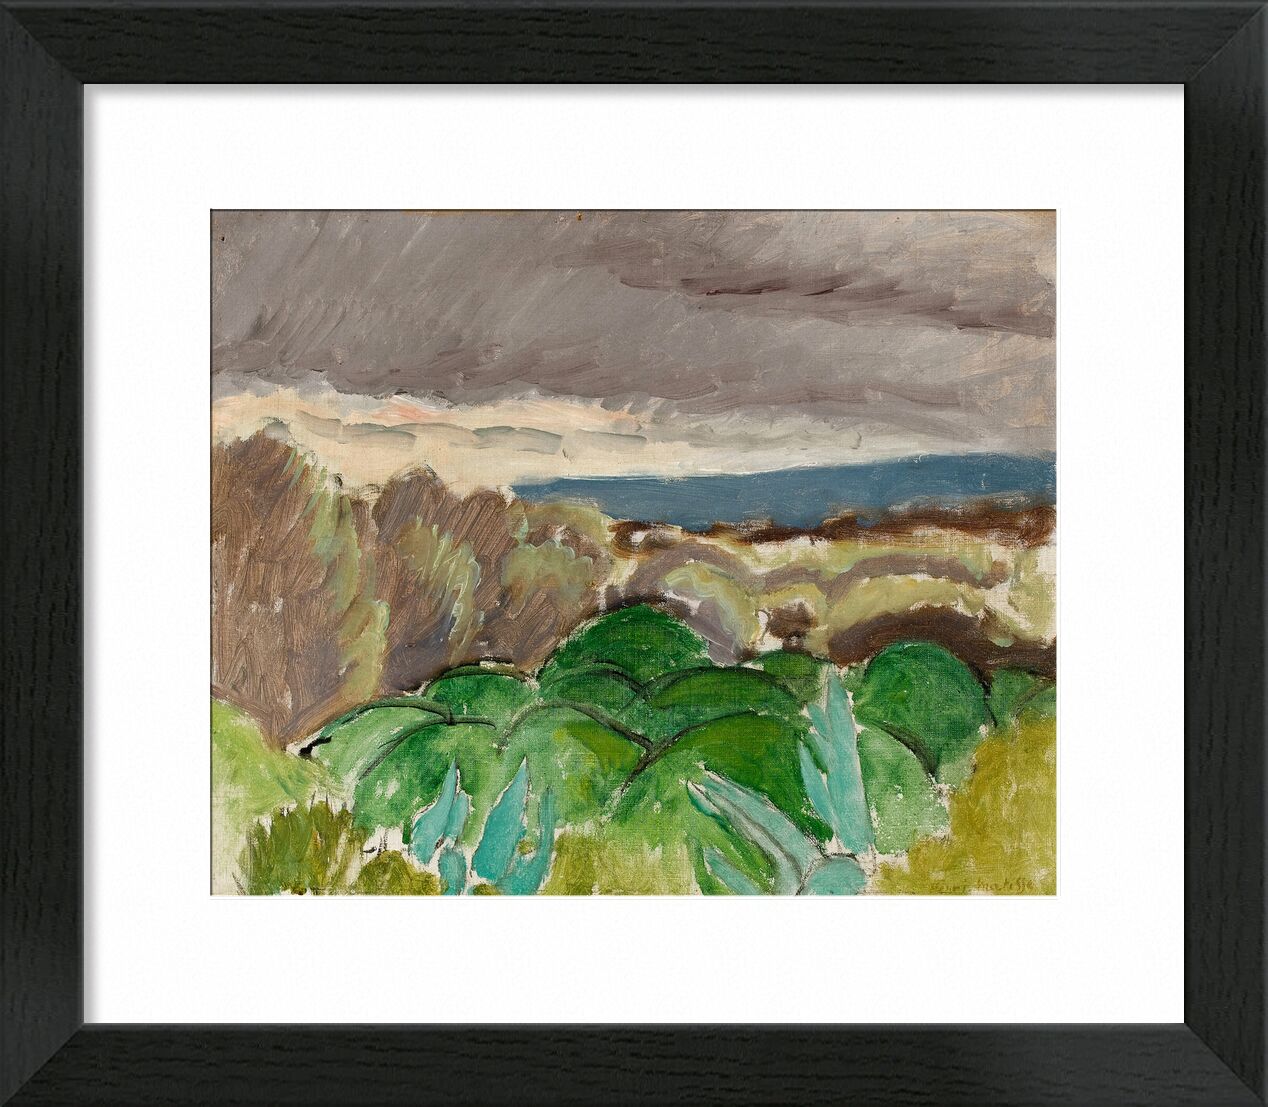 Cagnes, Landschaft bei Stürmischem Wetter, 1917 - Matisse von Bildende Kunst, Prodi Art, Matisse, Henri Matisse, Landschaft, Wolken, Gemälde, Tal, hügel